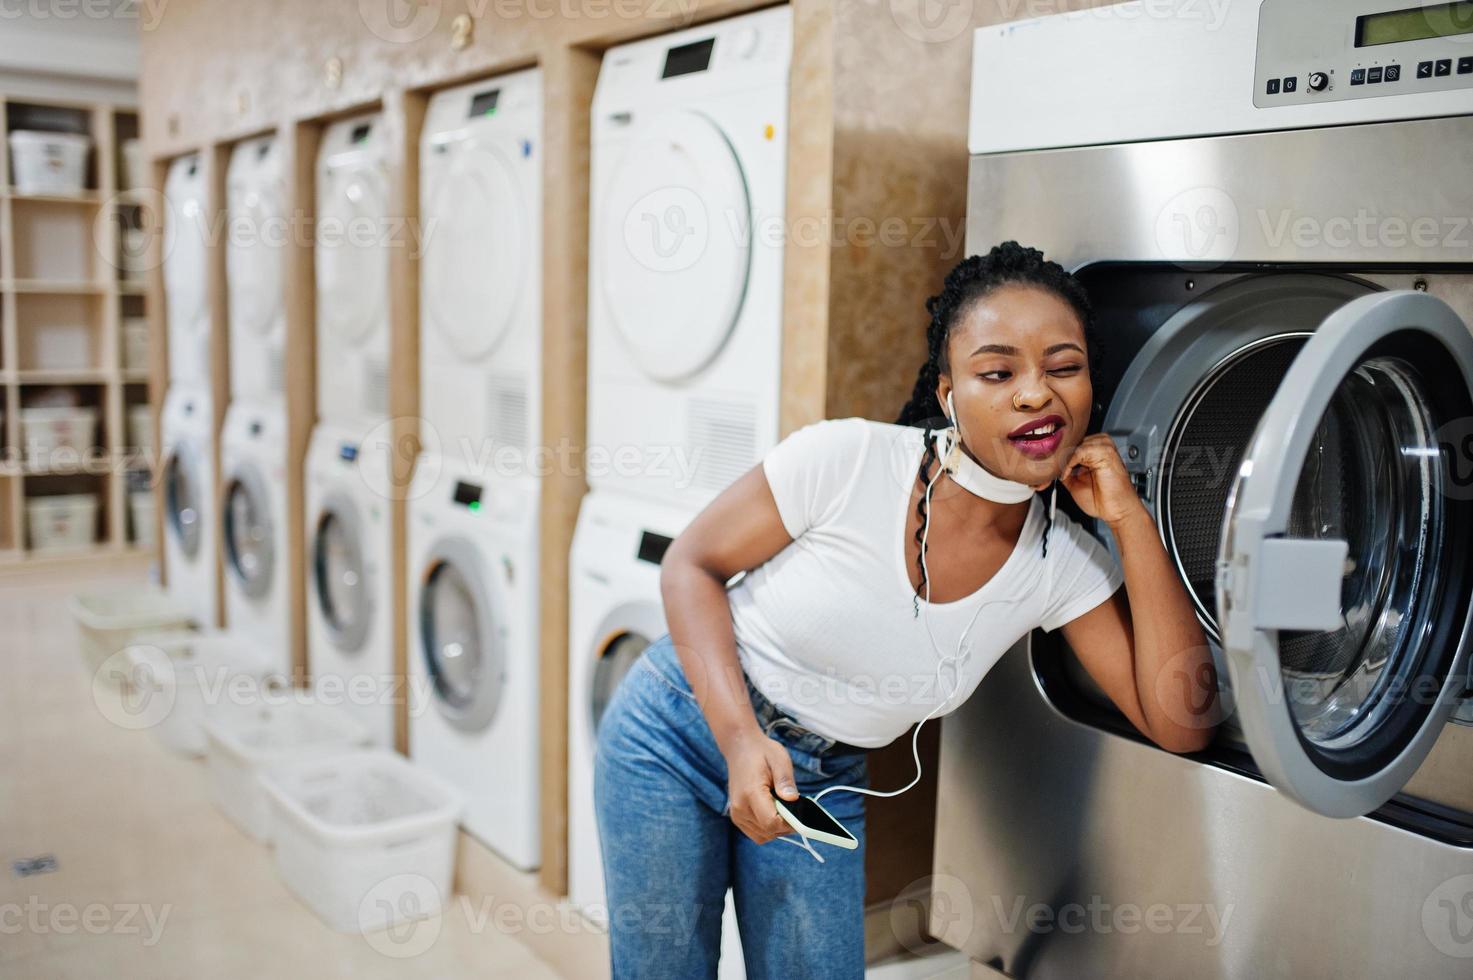 allegra donna afroamericana vicino alla lavatrice ascoltando musica con gli auricolari dal telefono cellulare nella lavanderia self-service. foto